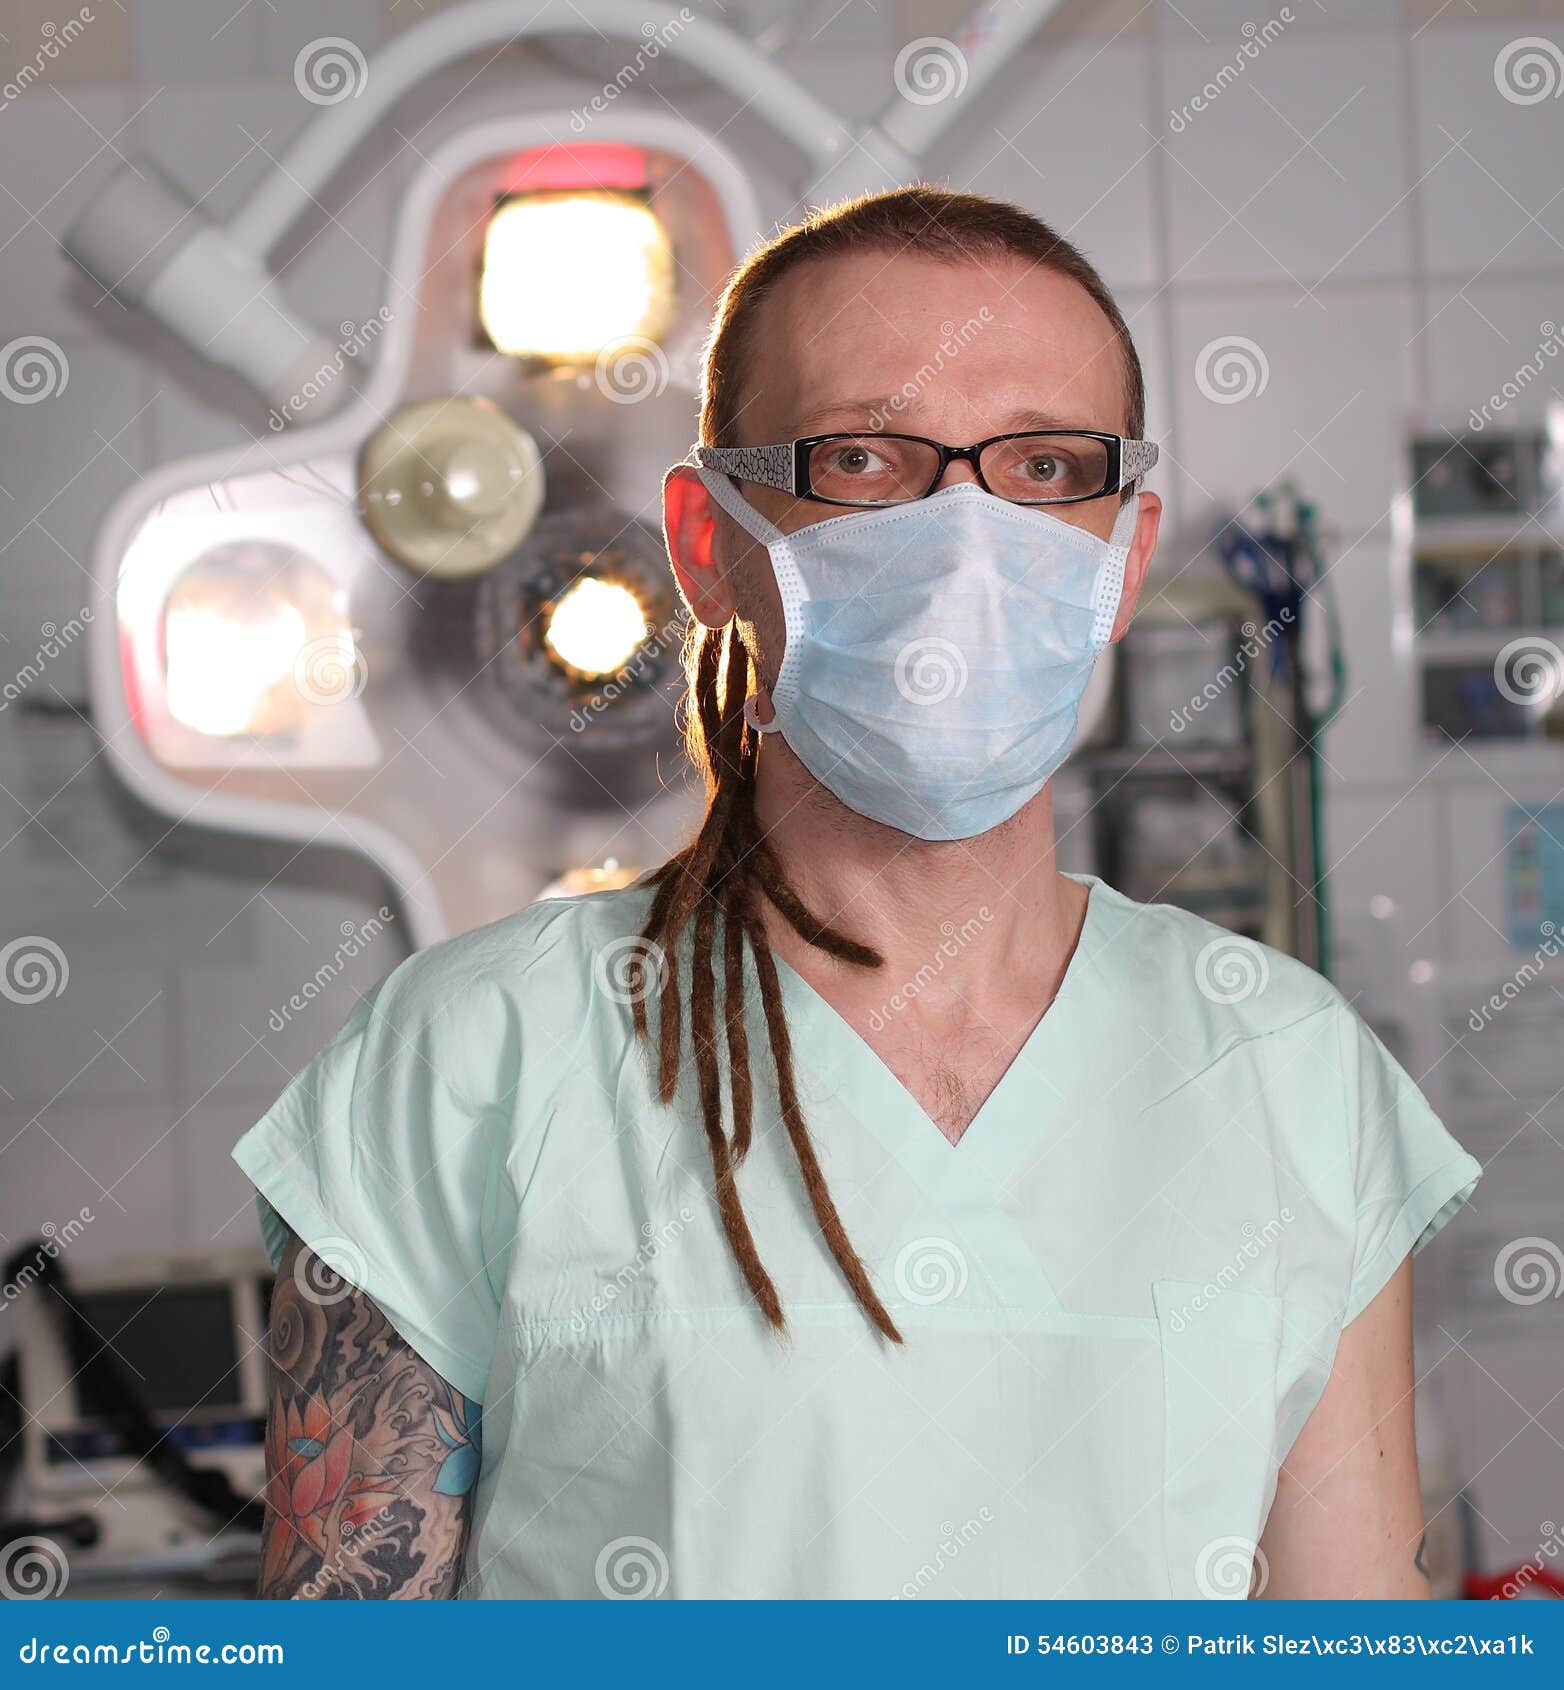 Retrato De La Enfermera De Sexo Masculino ICU Con El Tatuaje Y Los Dreadlocks Imagen de archivo - Imagen de estudiante, enfermera: 54603843